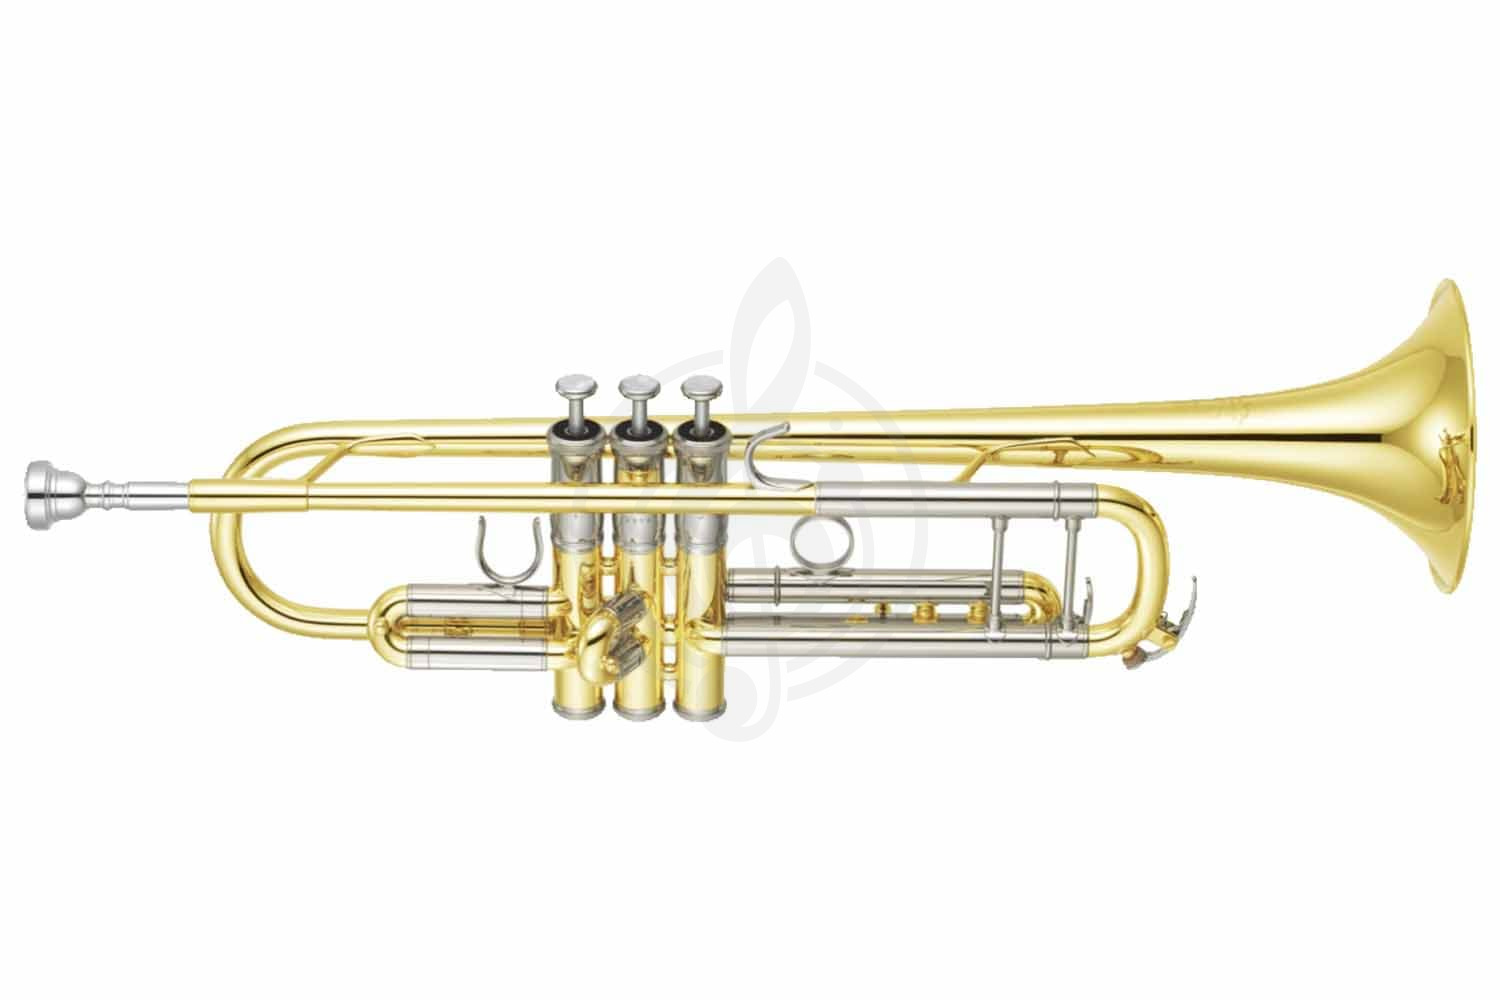 Труба Трубы Yamaha Yamaha YTR-8345 - труба Bb профессиональная, тяжёлая, yellow brass bell, чистый лак YTR-8345//04 - фото 1